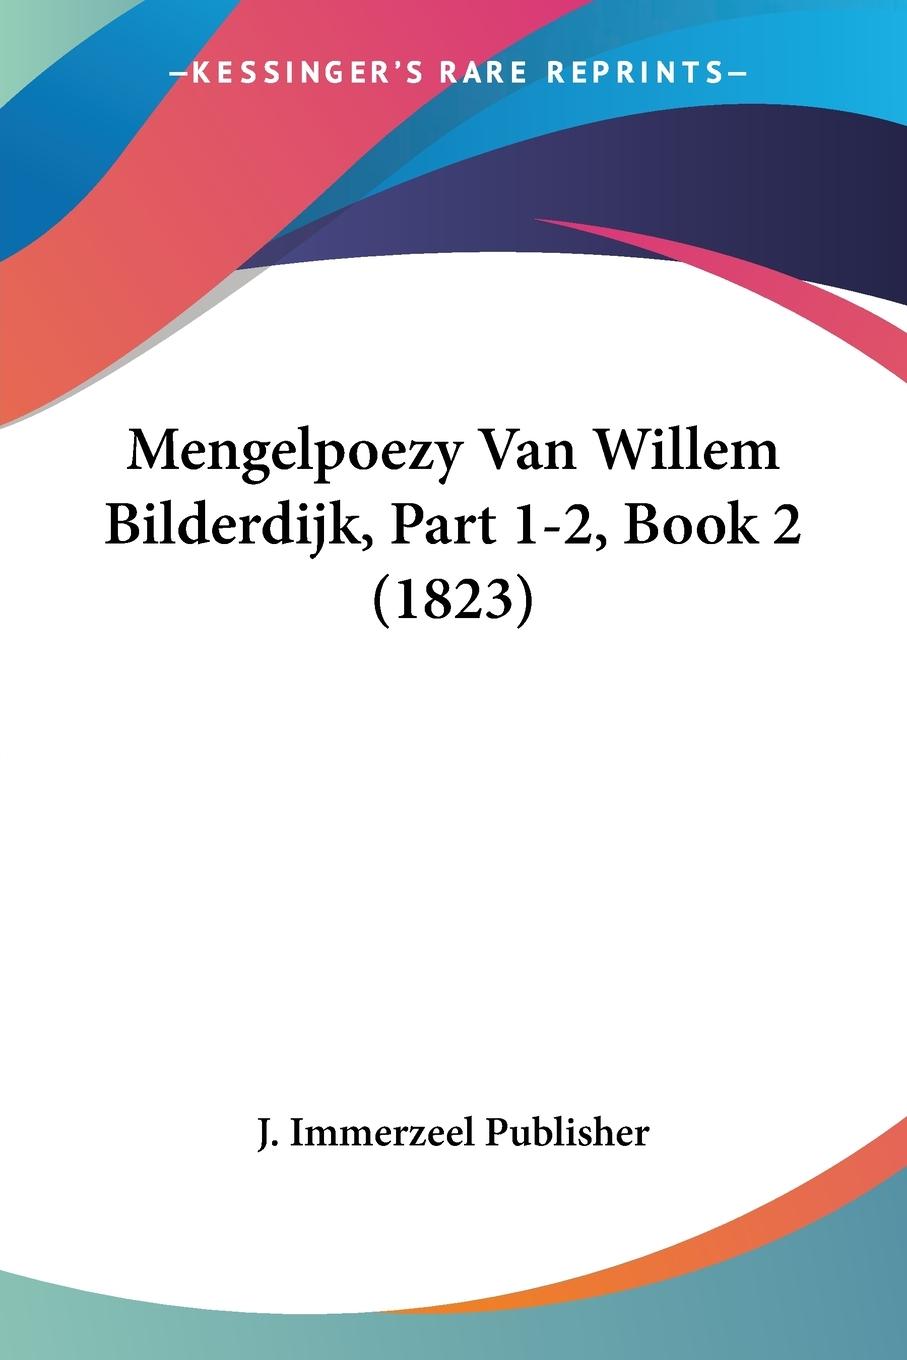 Mengelpoezy Van Willem Bilderdijk, Part 1-2, Book 2 (1823) - J. Immerzeel Publisher